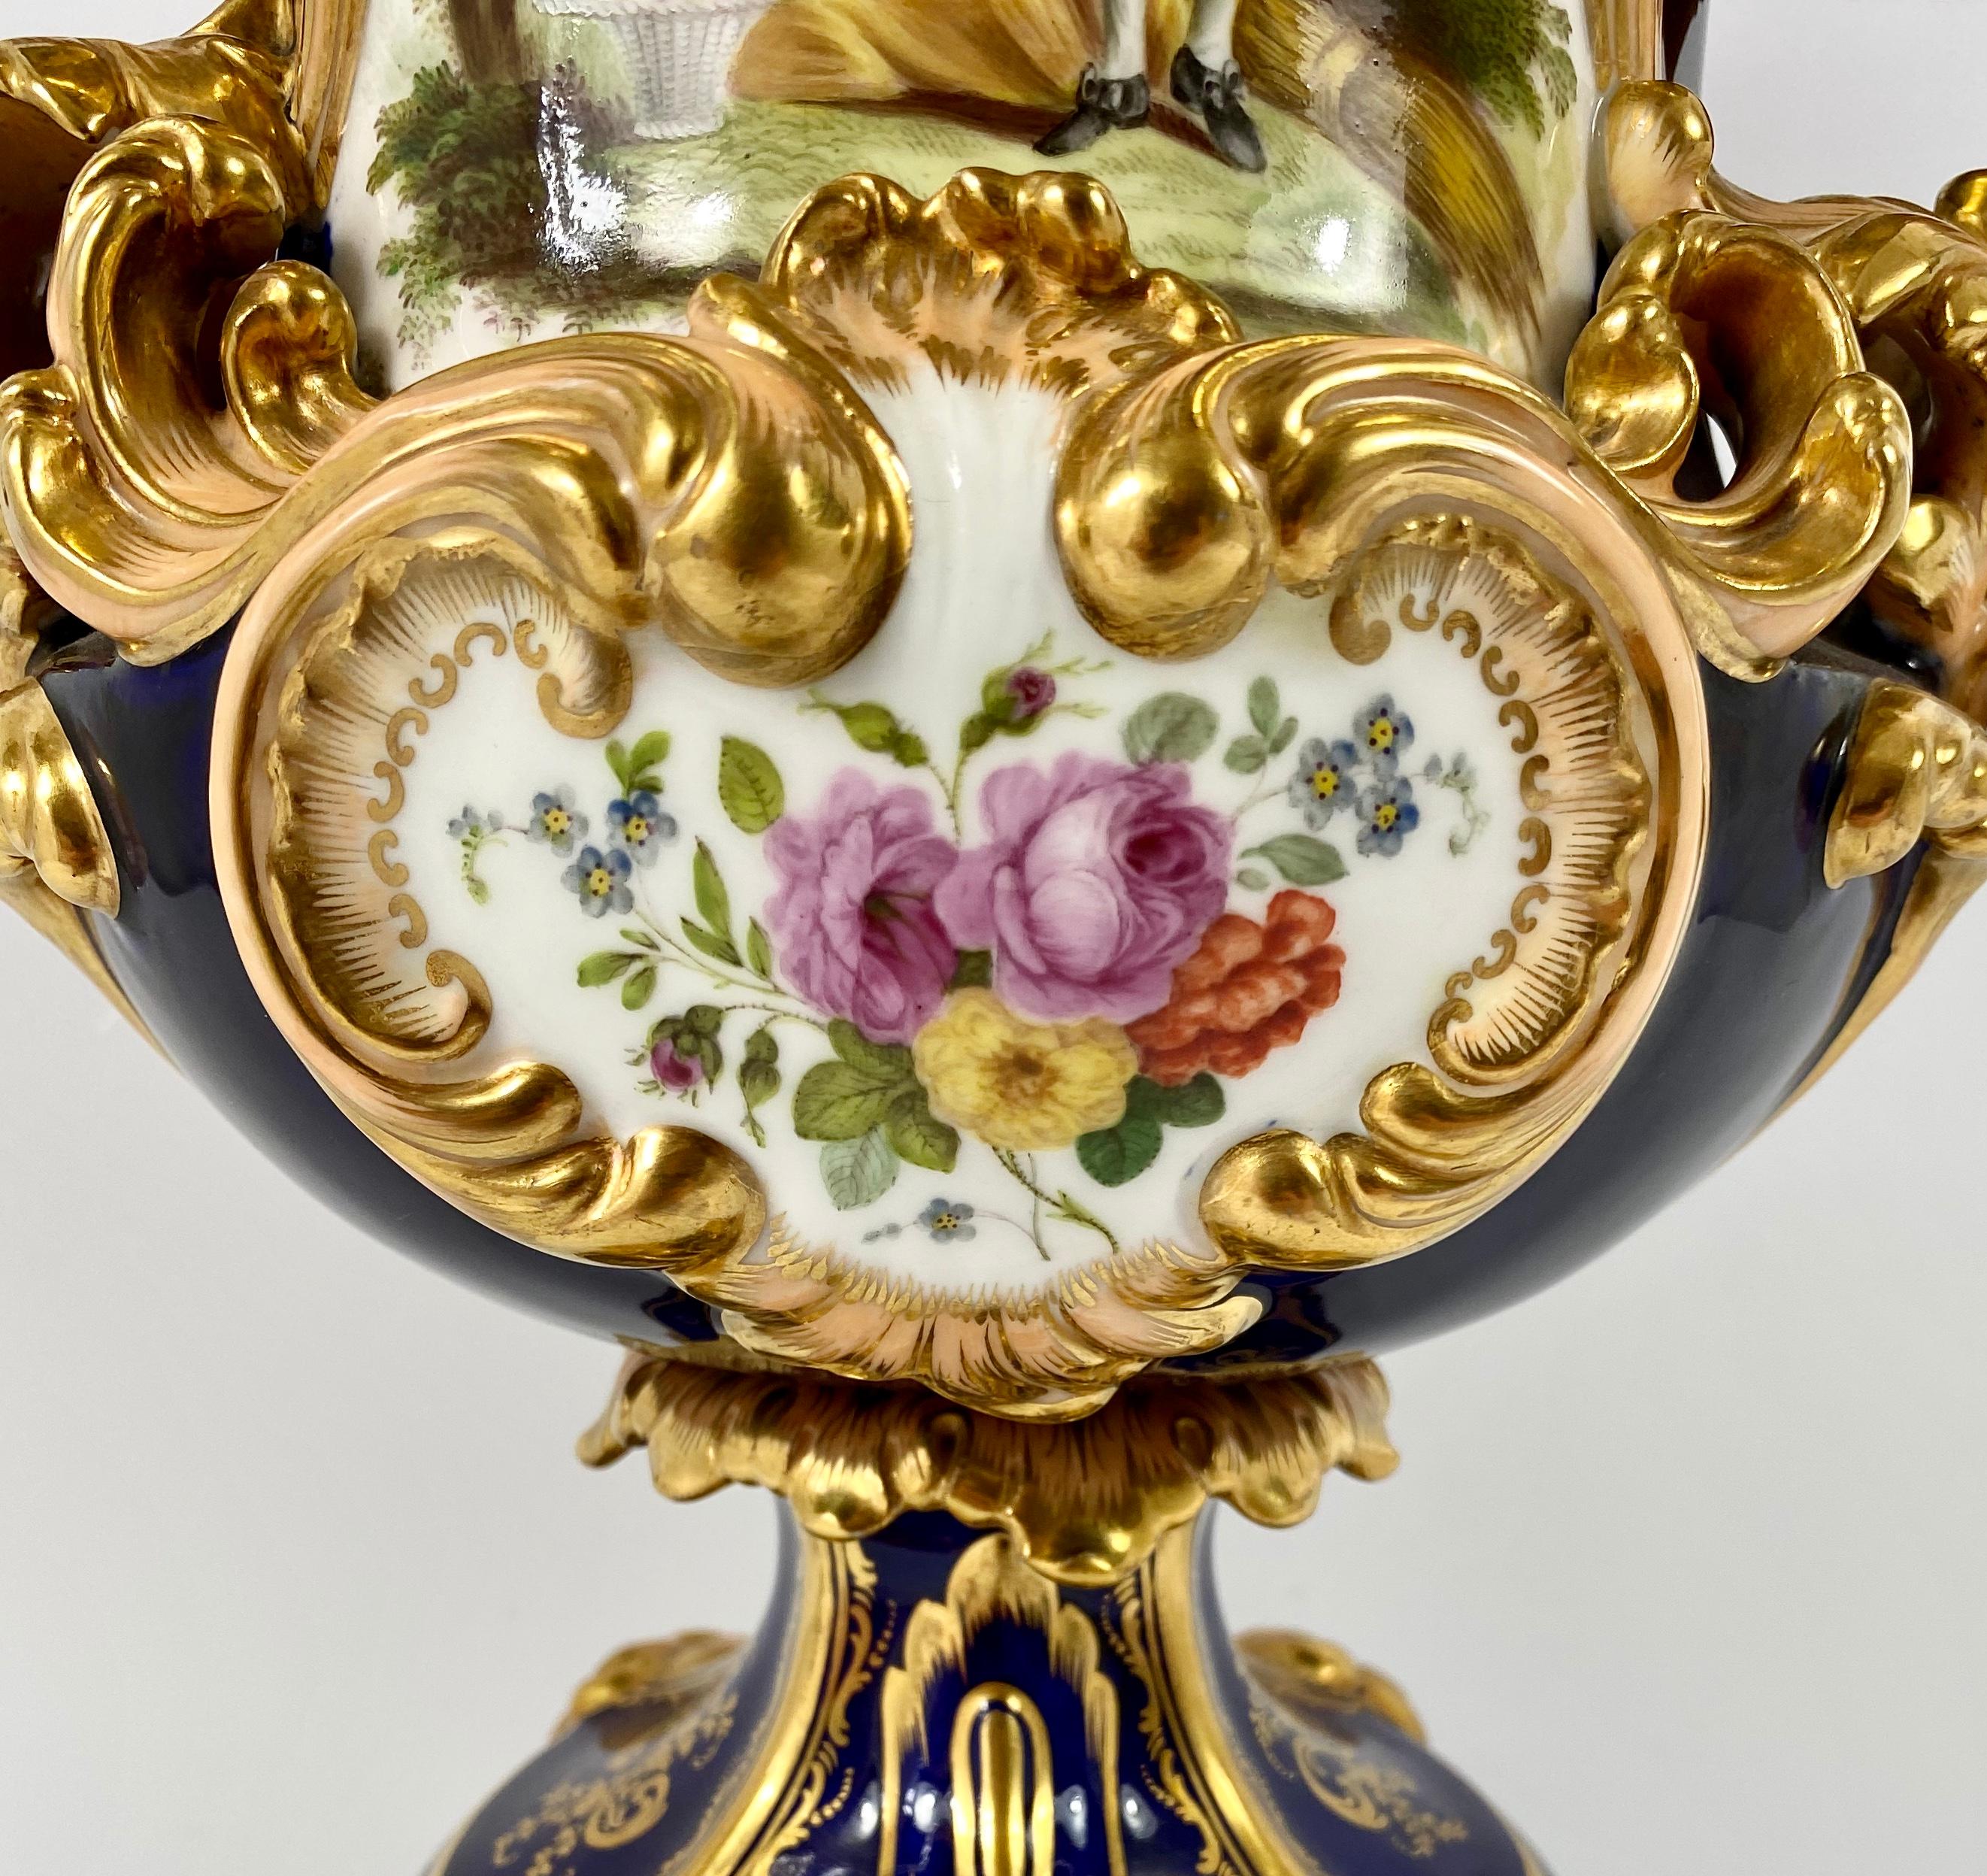 Fine pair Minton porcelain vases & covers, ‘Four Seasons’ c. 1830. 4